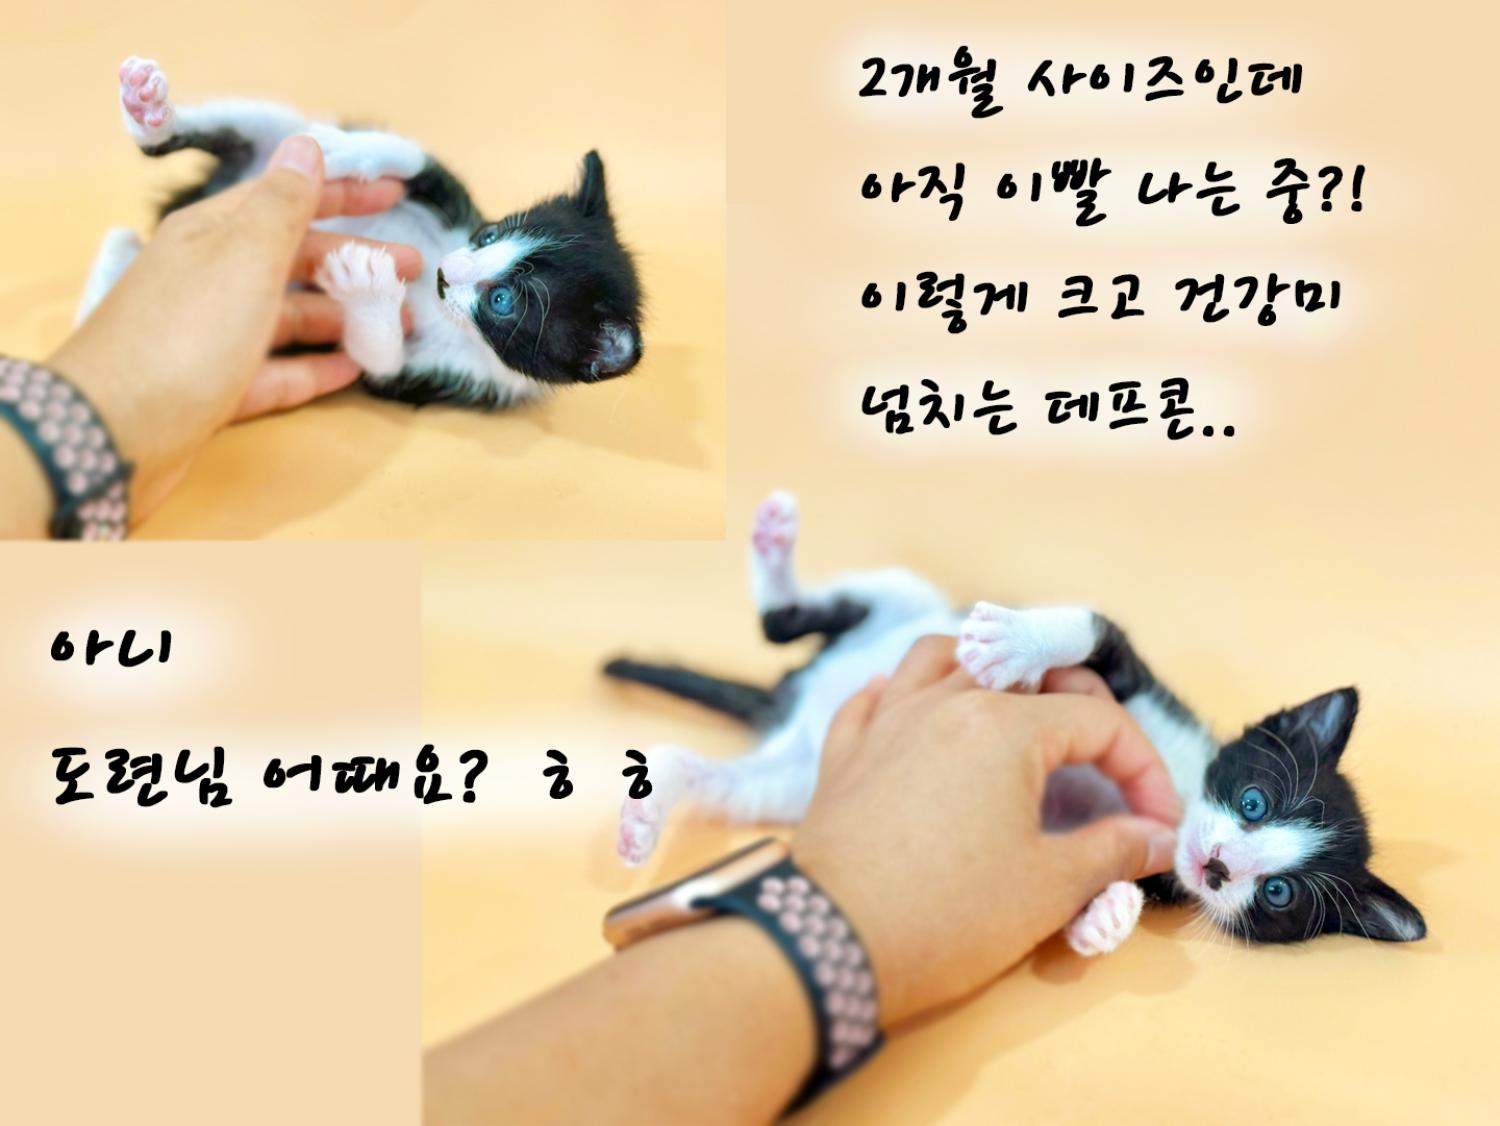 공고 번호가 경북-포항-2024-00472인 한국 고양이 동물 사진